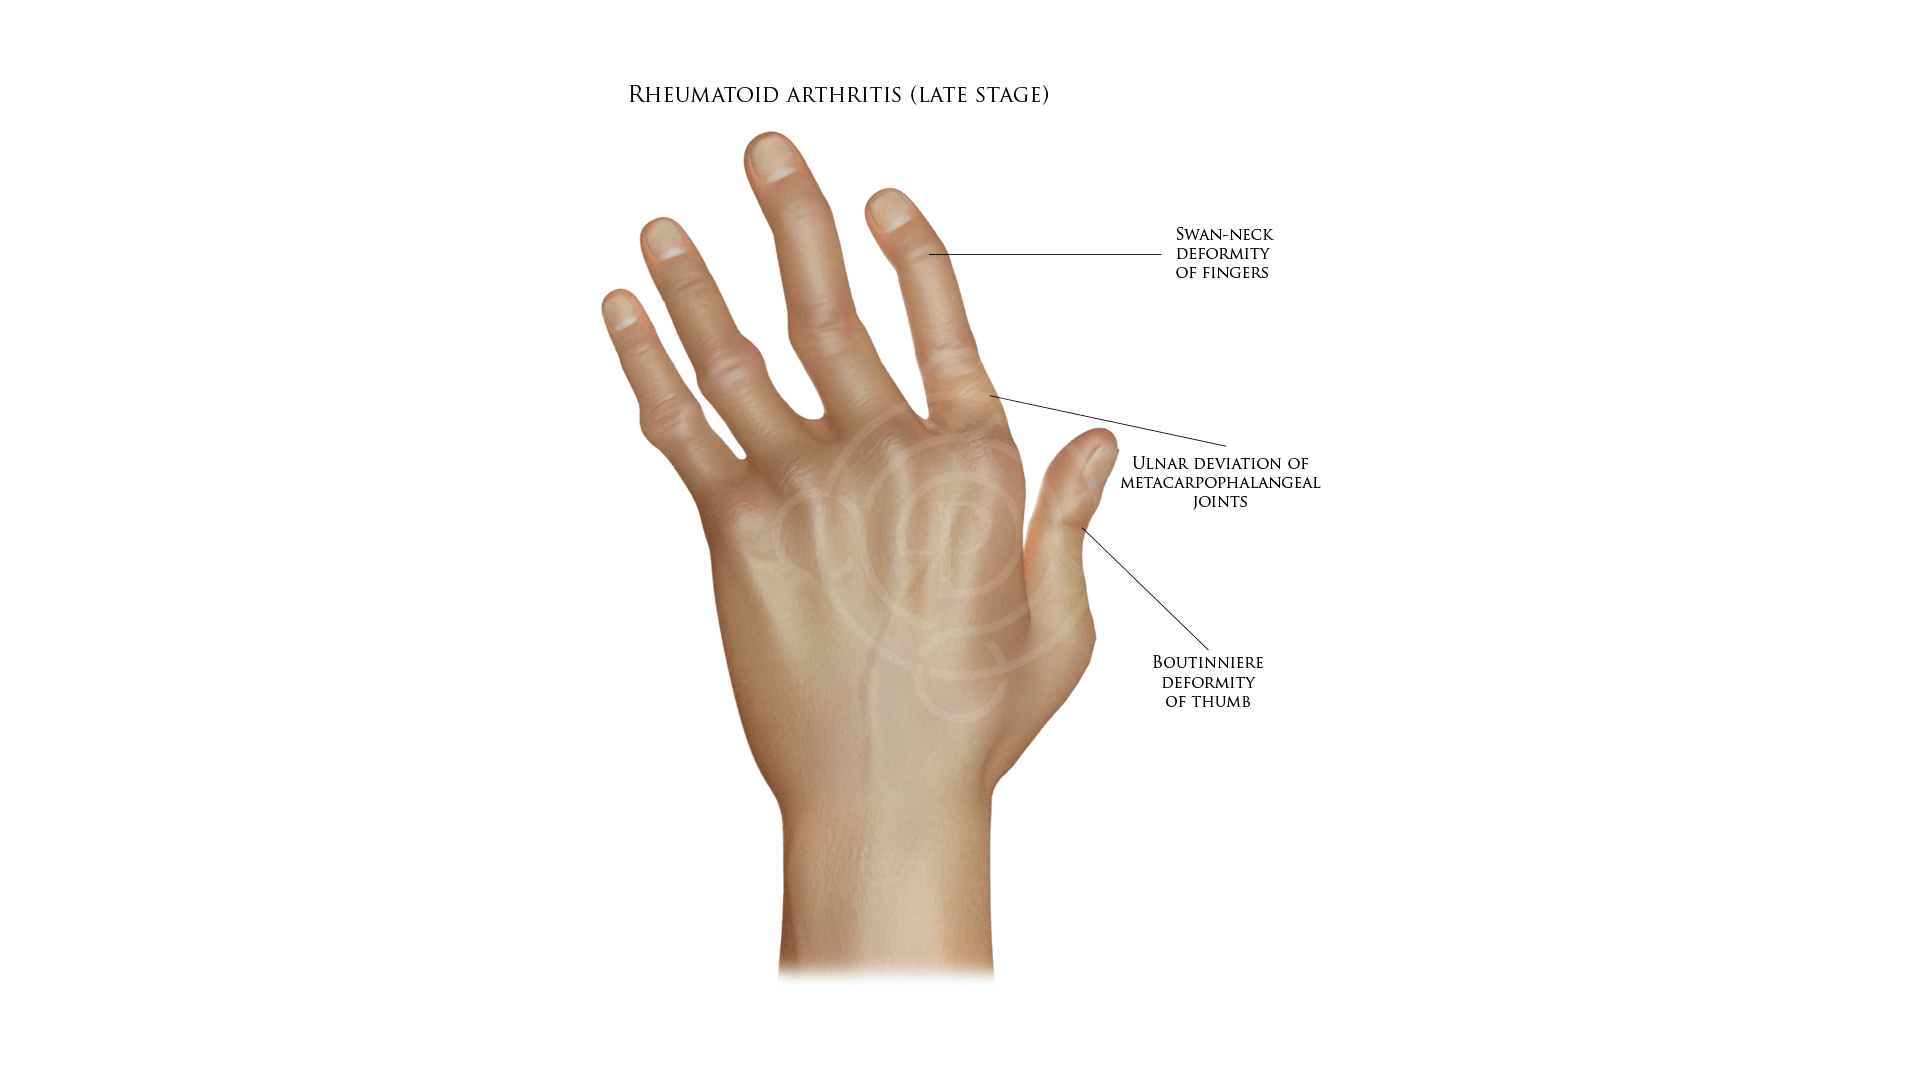 hand rheumatoid arthritis at late stage